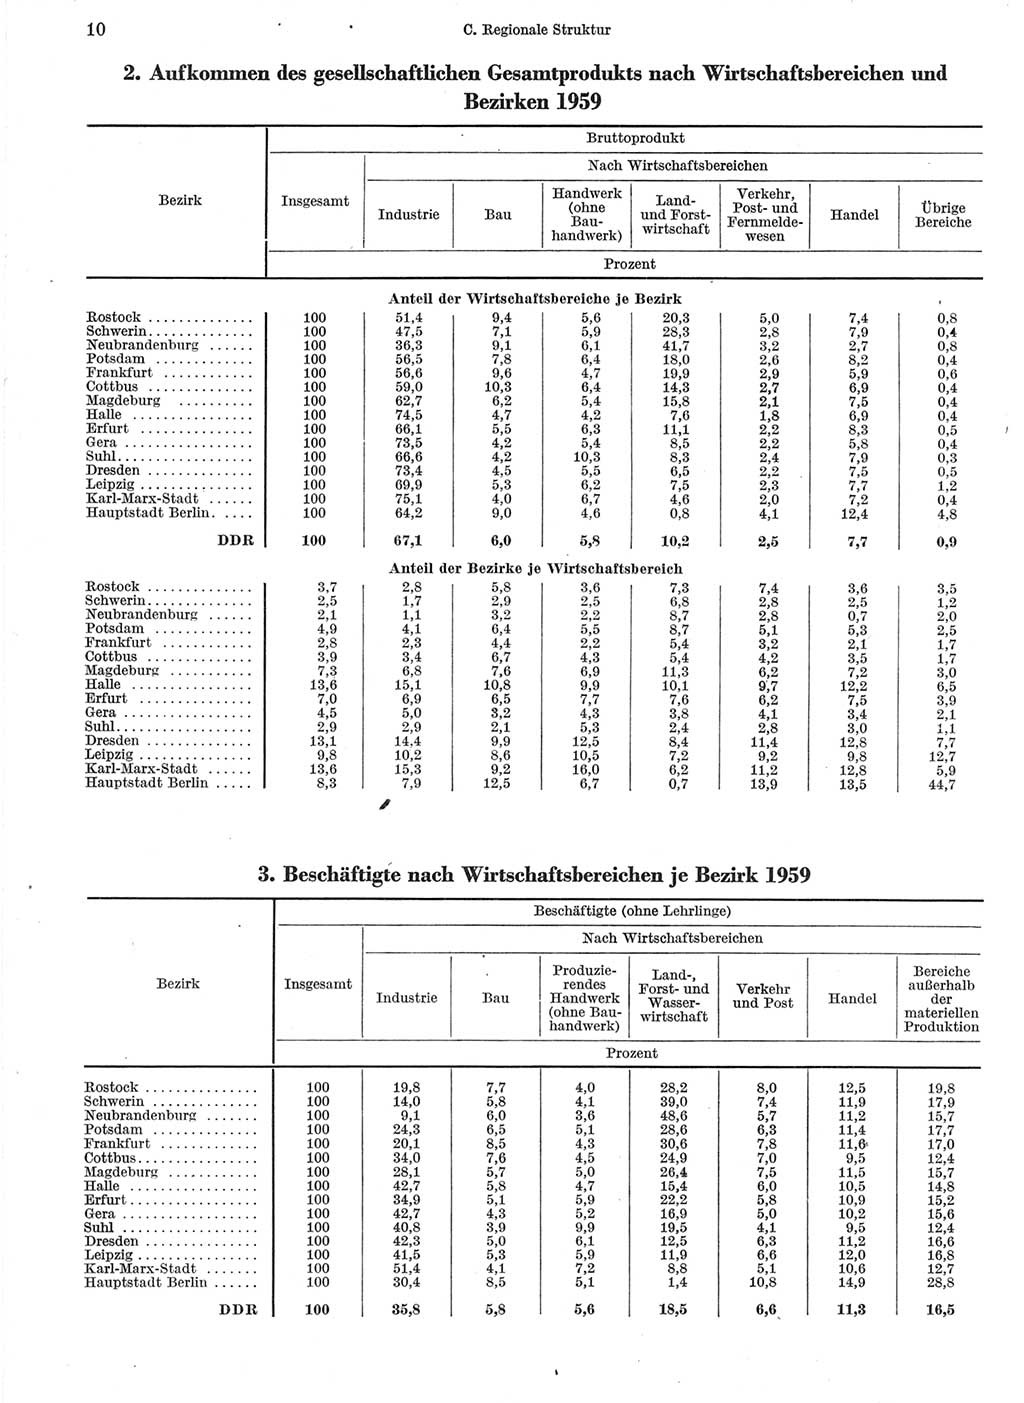 Statistisches Jahrbuch der Deutschen Demokratischen Republik (DDR) 1960-1961, Seite 10 (Stat. Jb. DDR 1960-1961, S. 10)